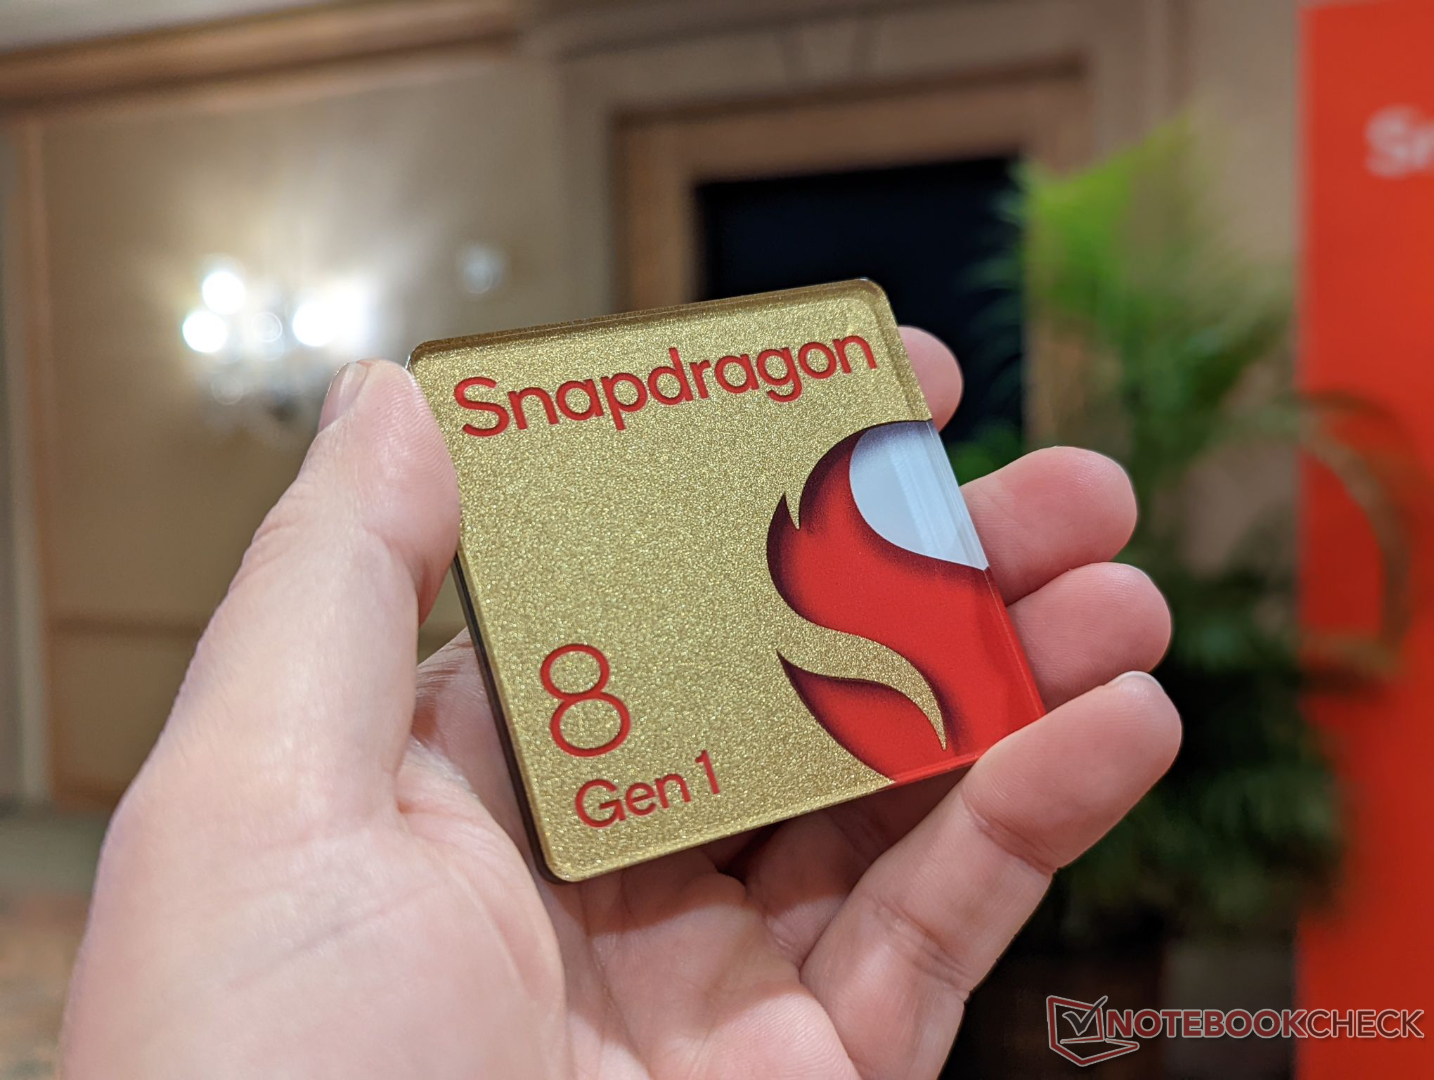 Snapdragon 8 Gen2 For Galaxy Has 3 Big Upgrades